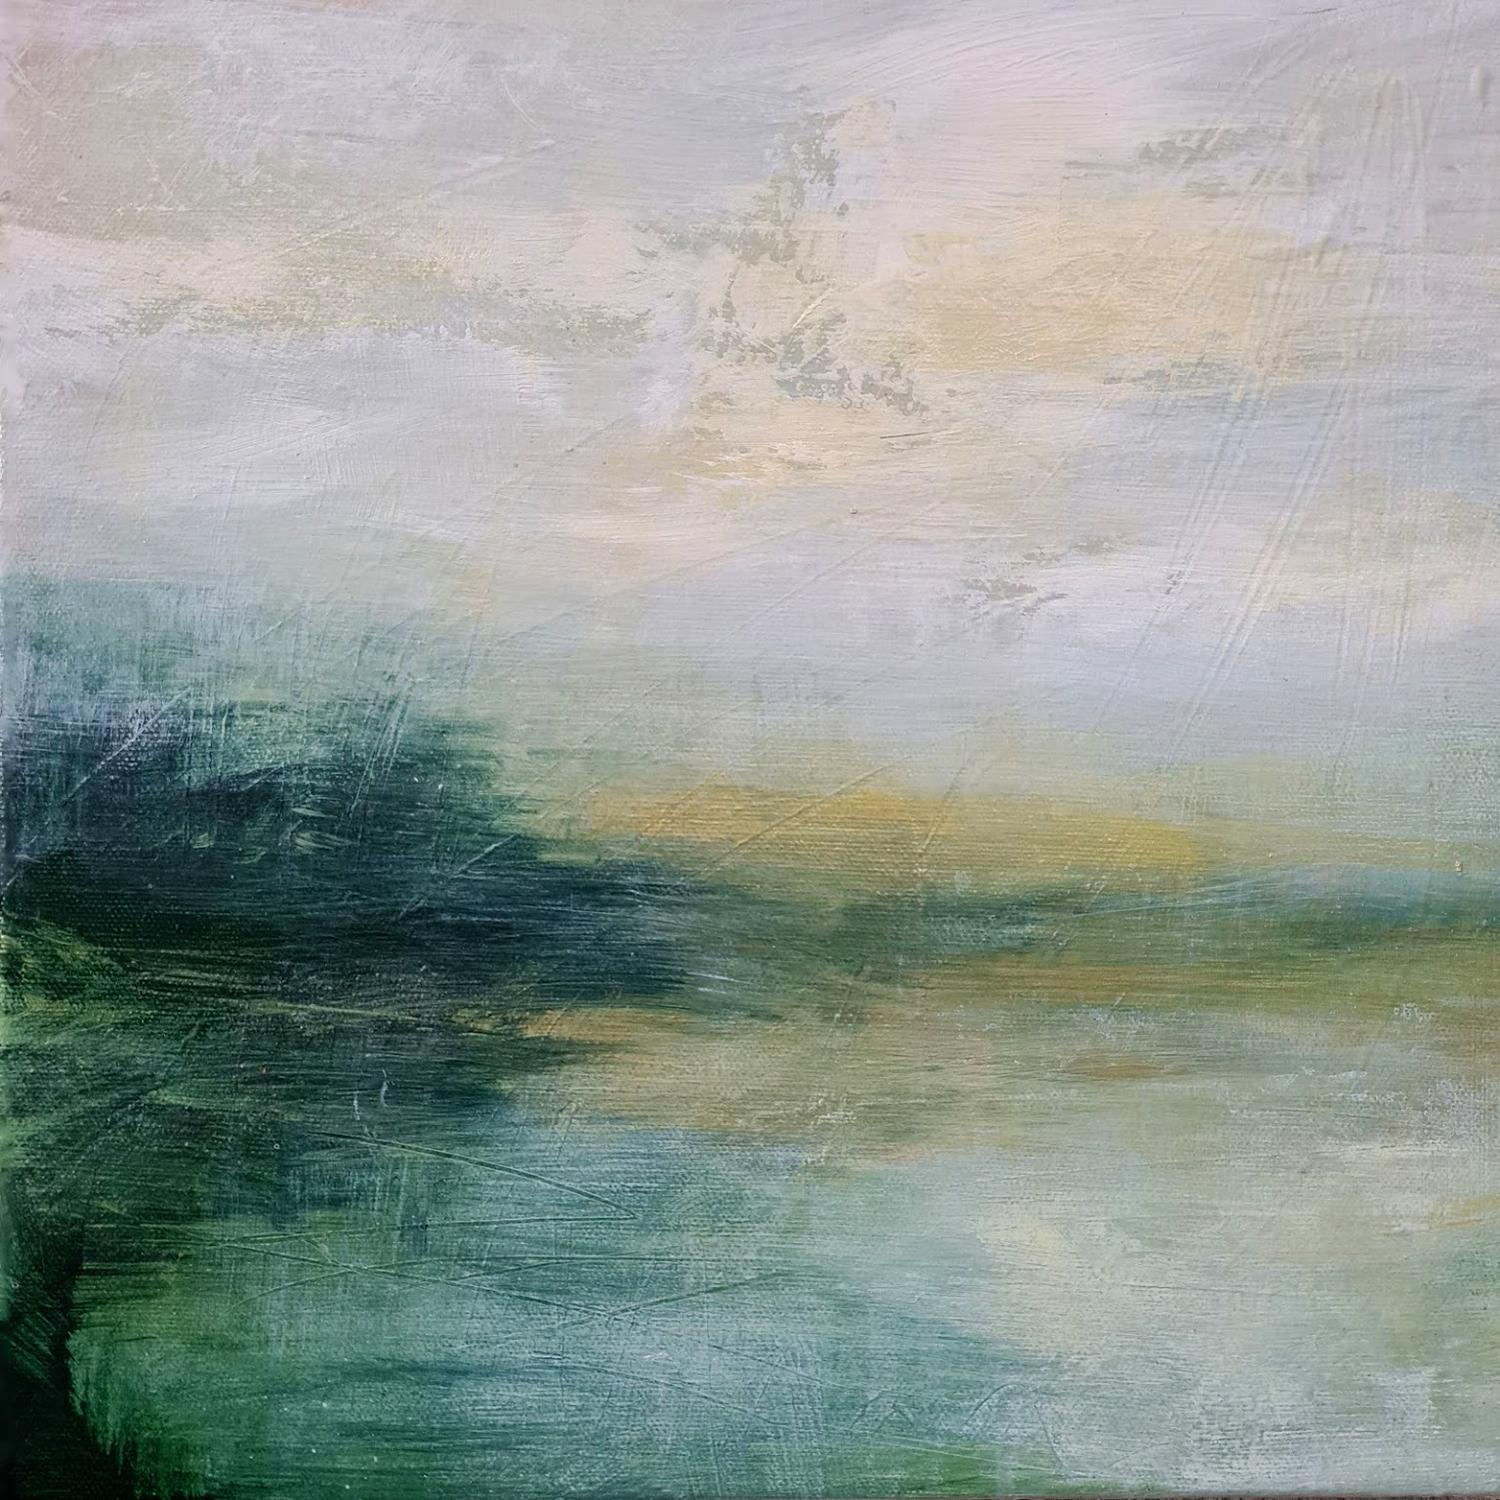  Heidi Laughton Abstract Painting - Green Hues